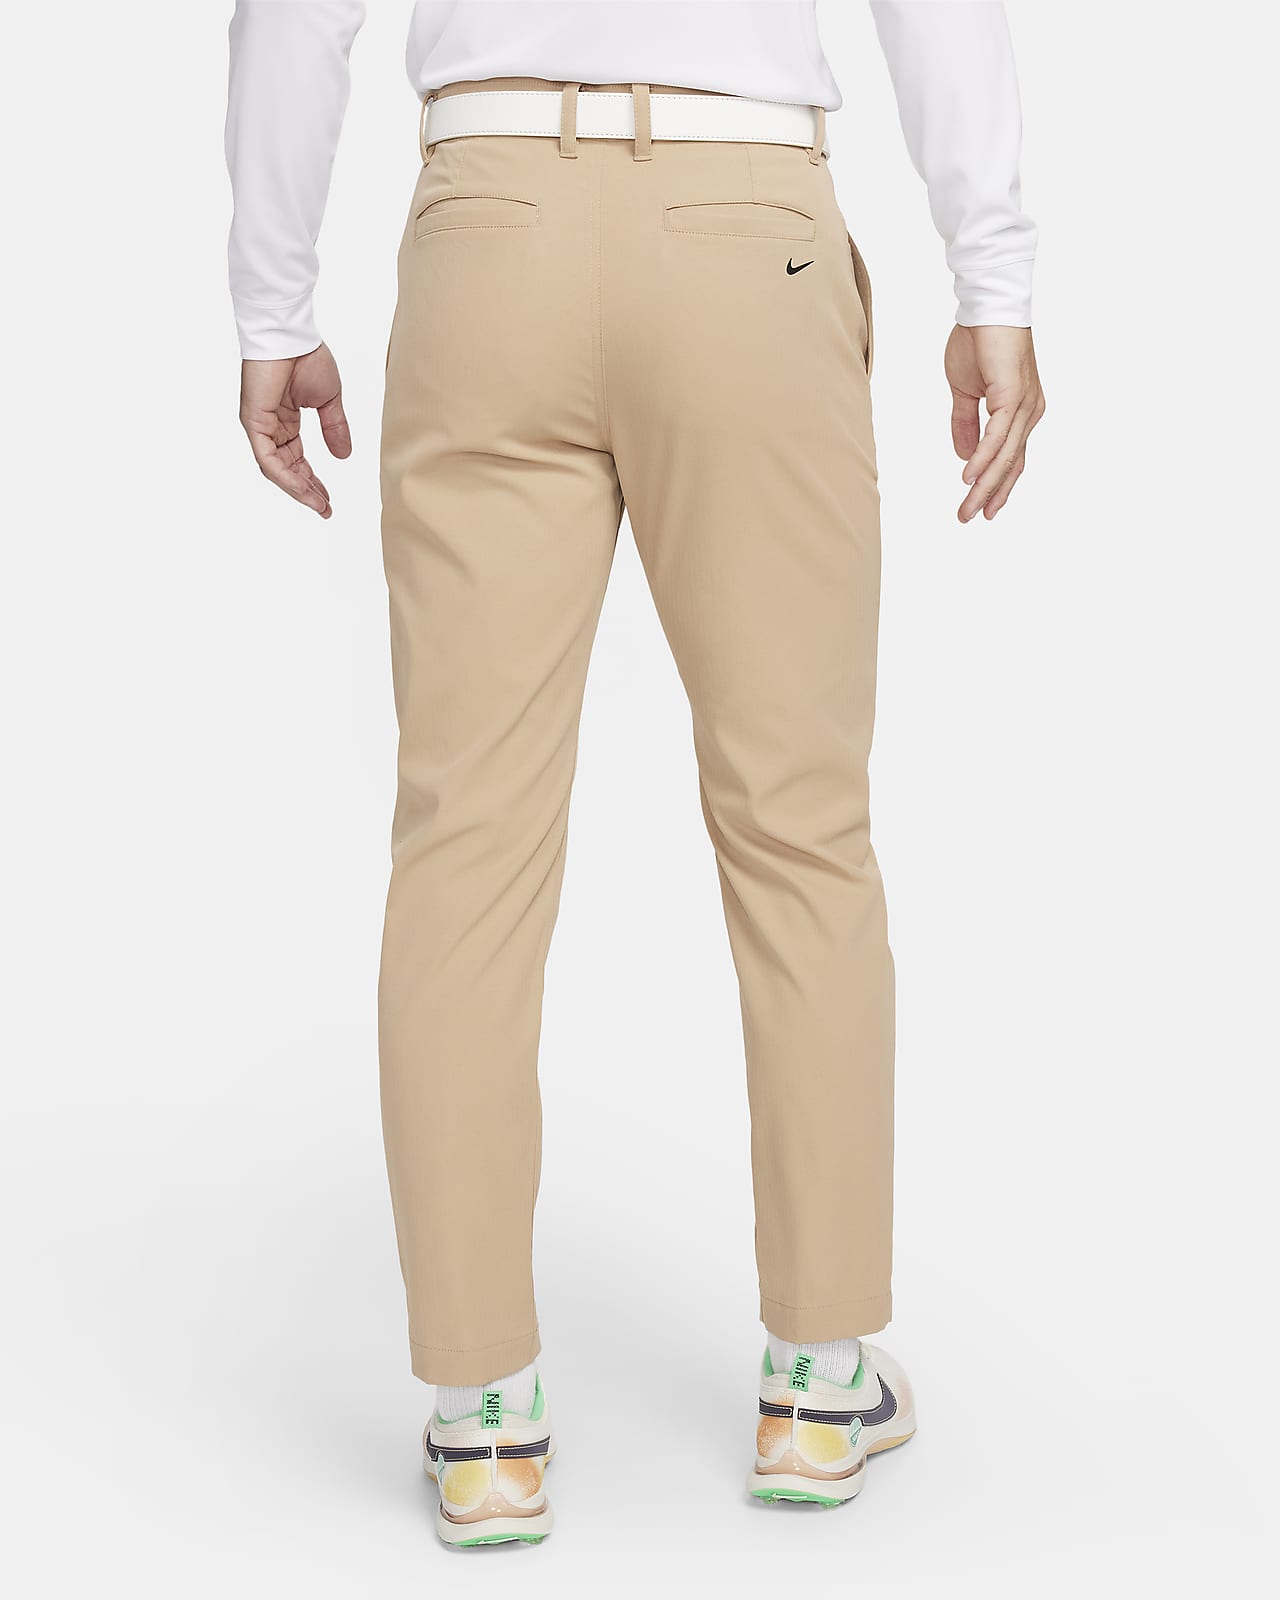 Nike Repel Men's Golf Utility Pants.